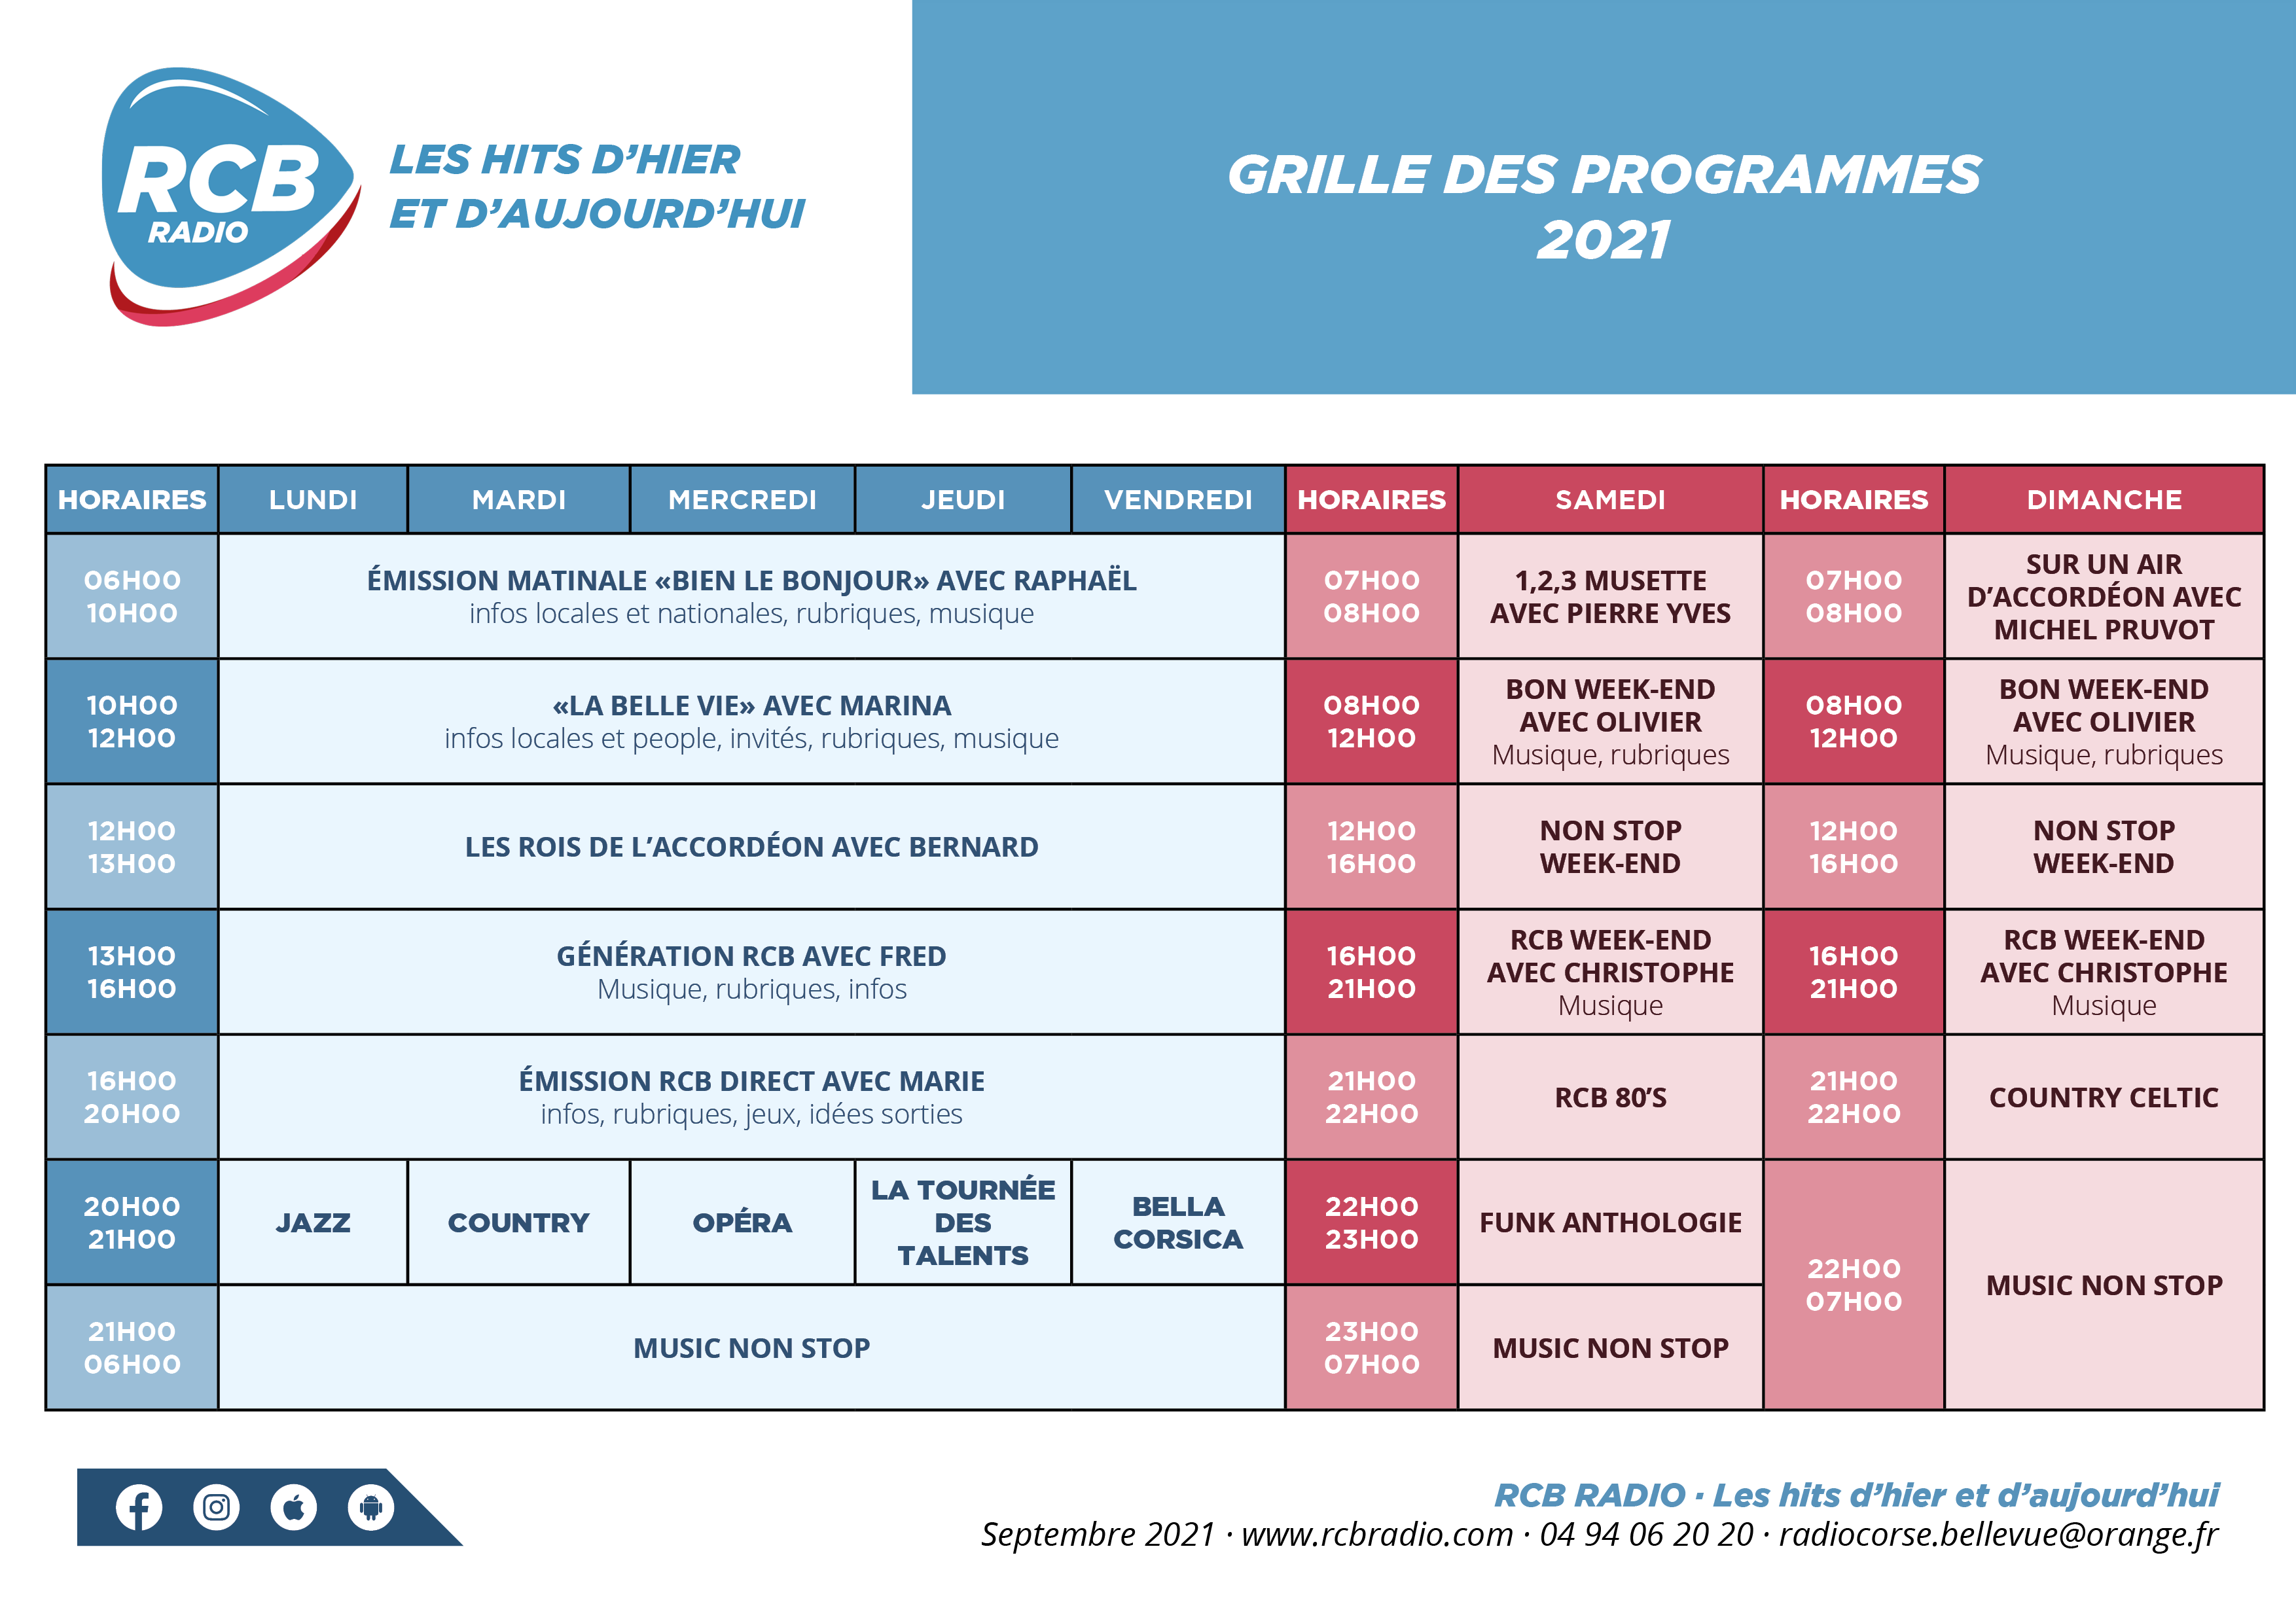 RCB - Grille Programmes 2021 nouveau- modif.png (336 KB)